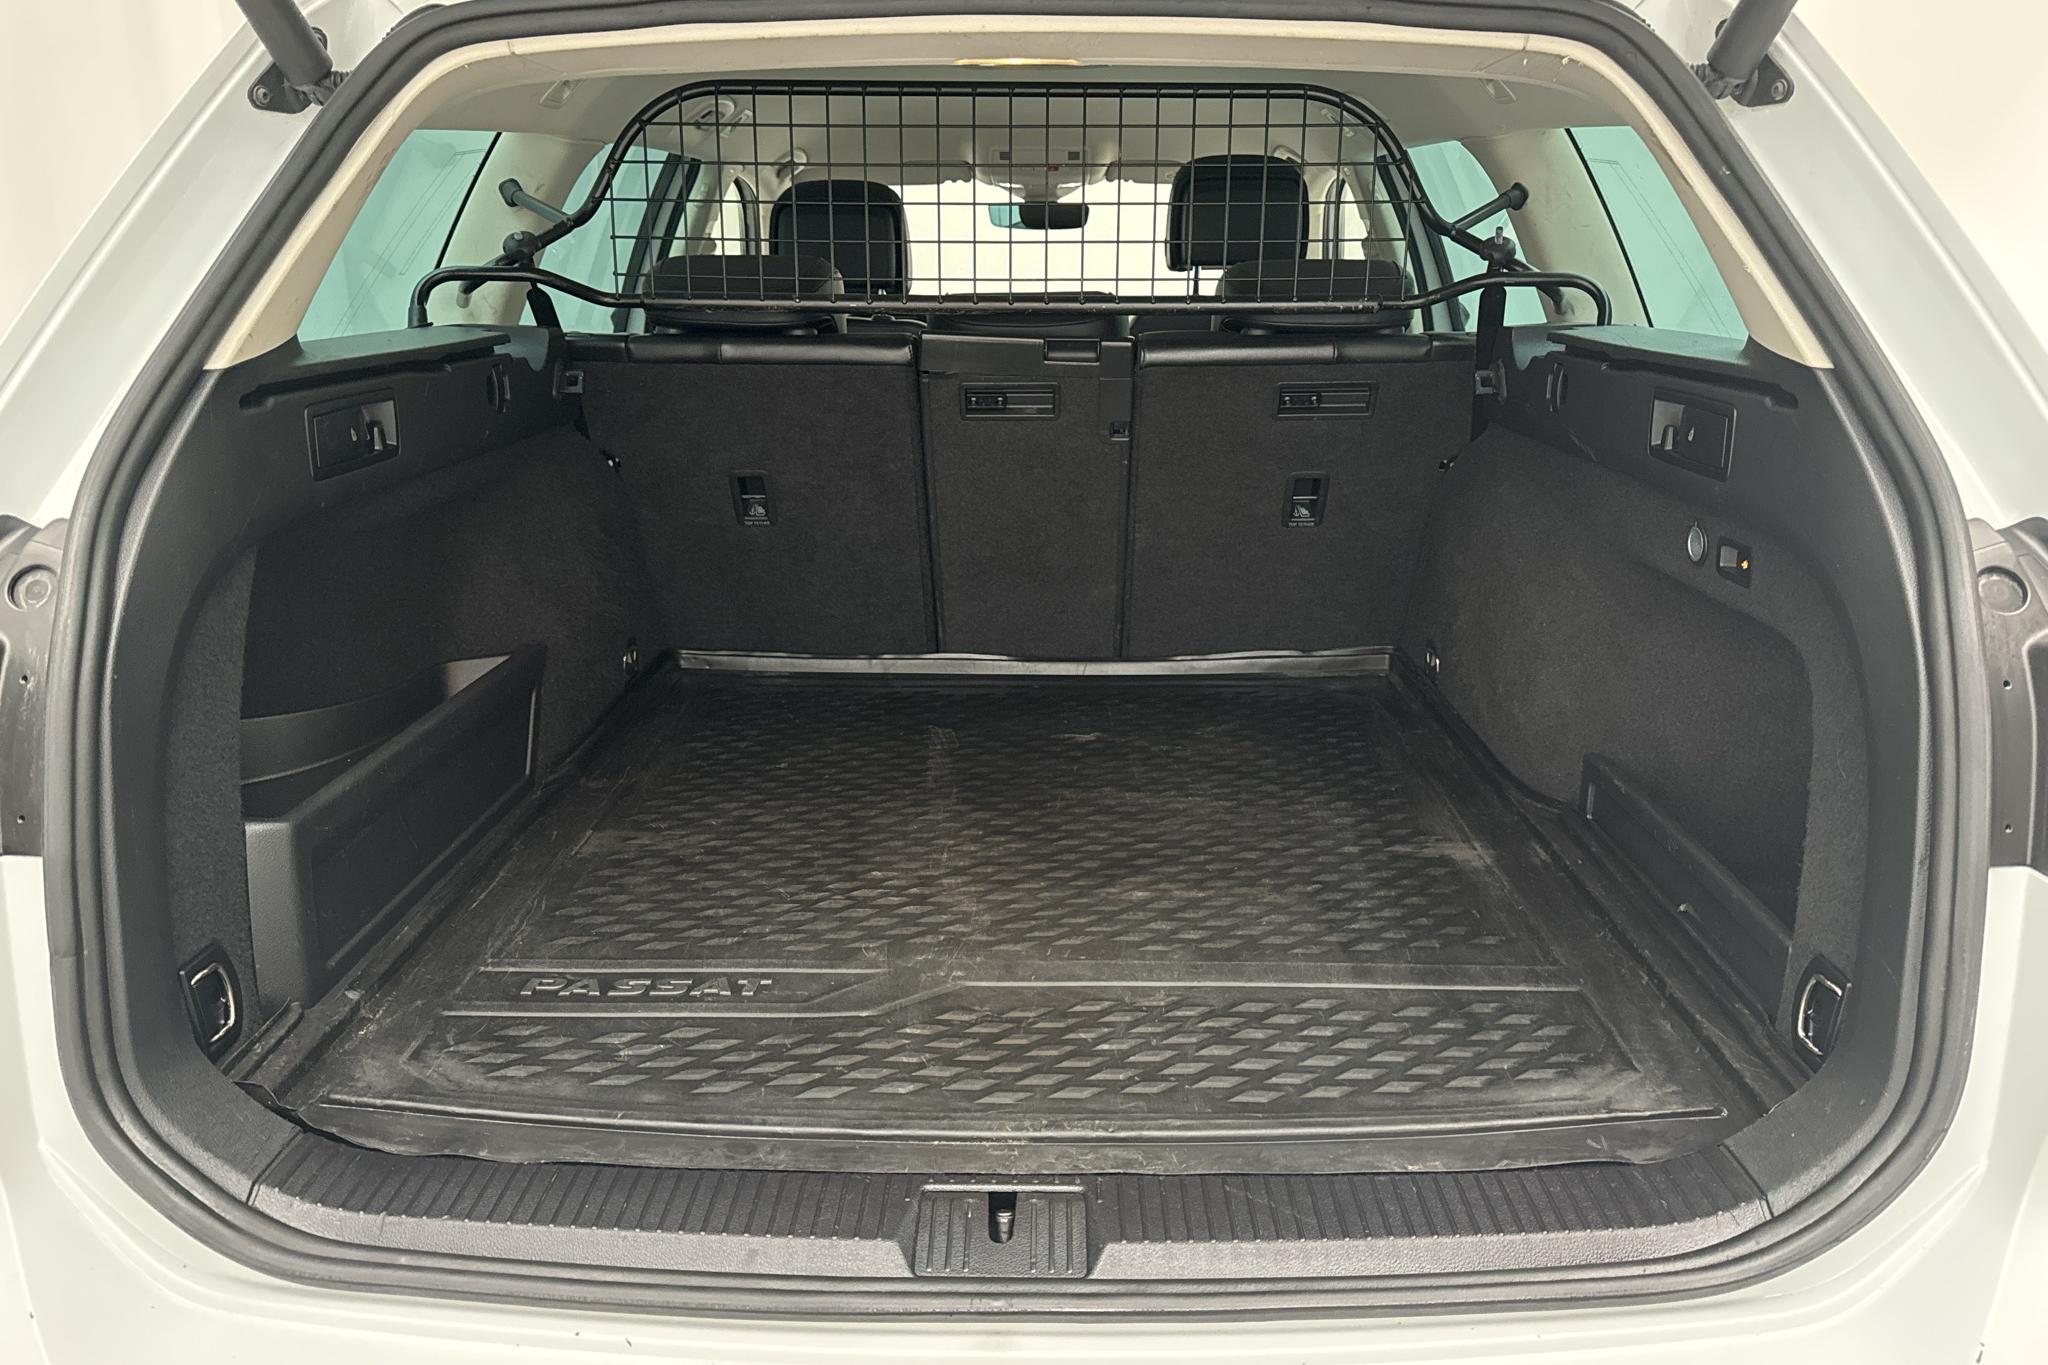 VW Passat Alltrack 2.0 TDI 4MOTION (190hk) - 198 760 km - Automaattinen - valkoinen - 2019